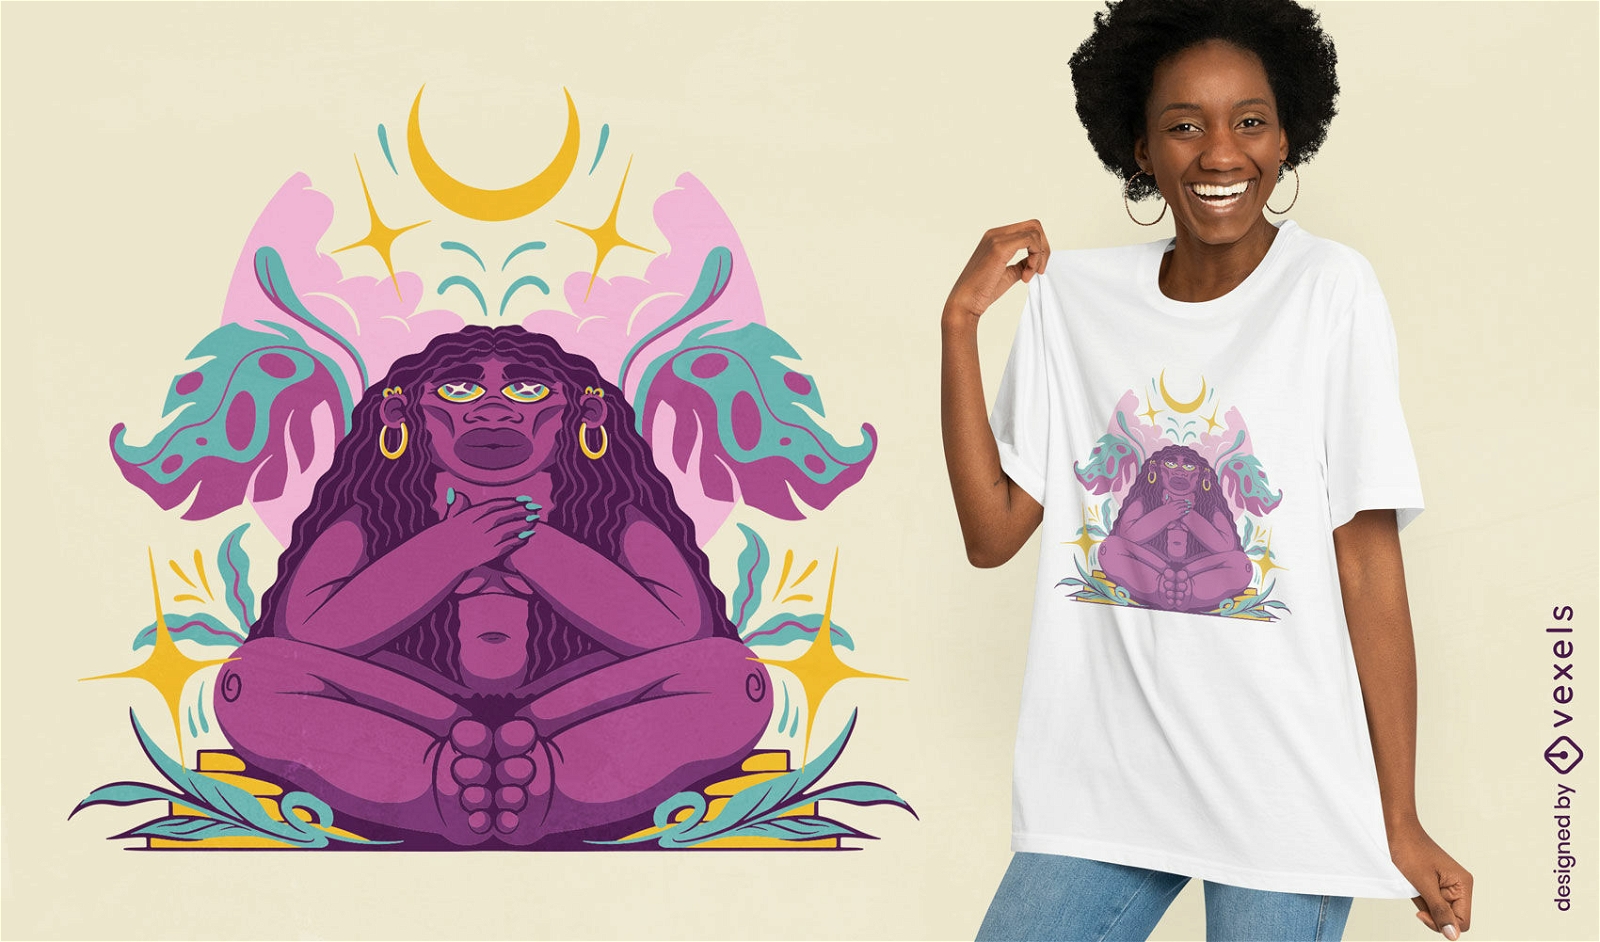 Mujer afro en el diseño de camiseta de la naturaleza.